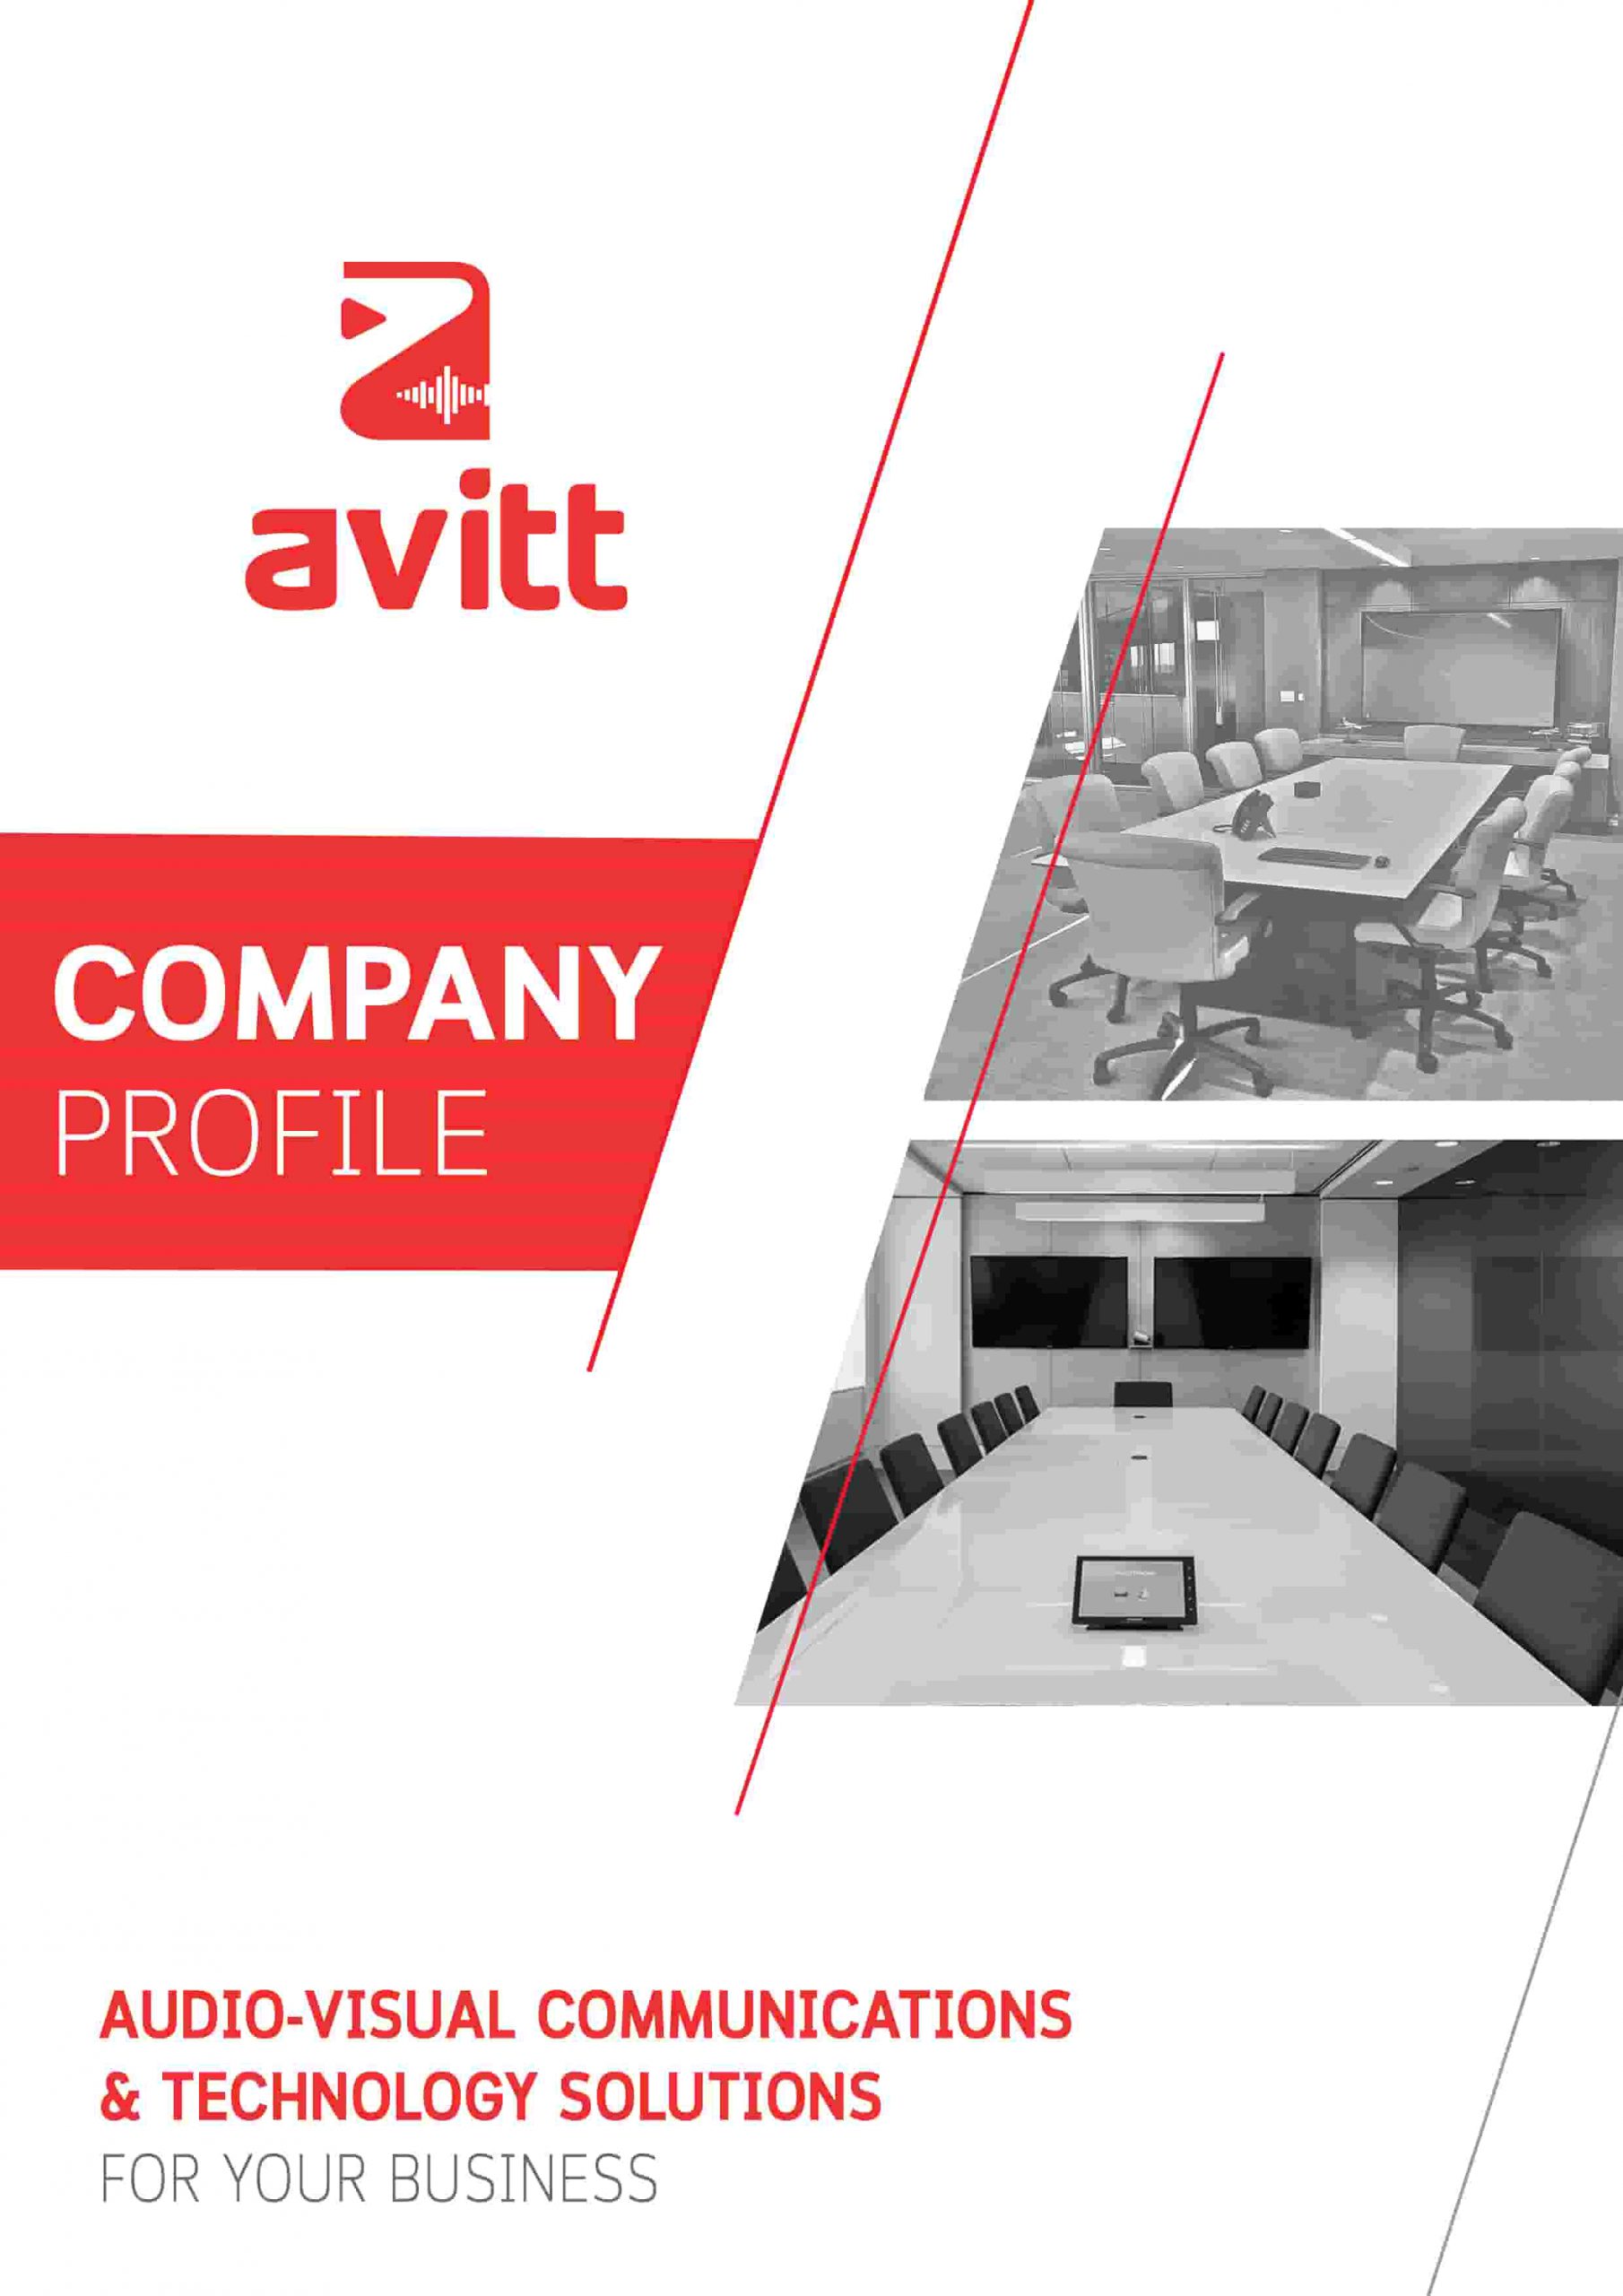 Avitt AV Business Company Profile design - front page image